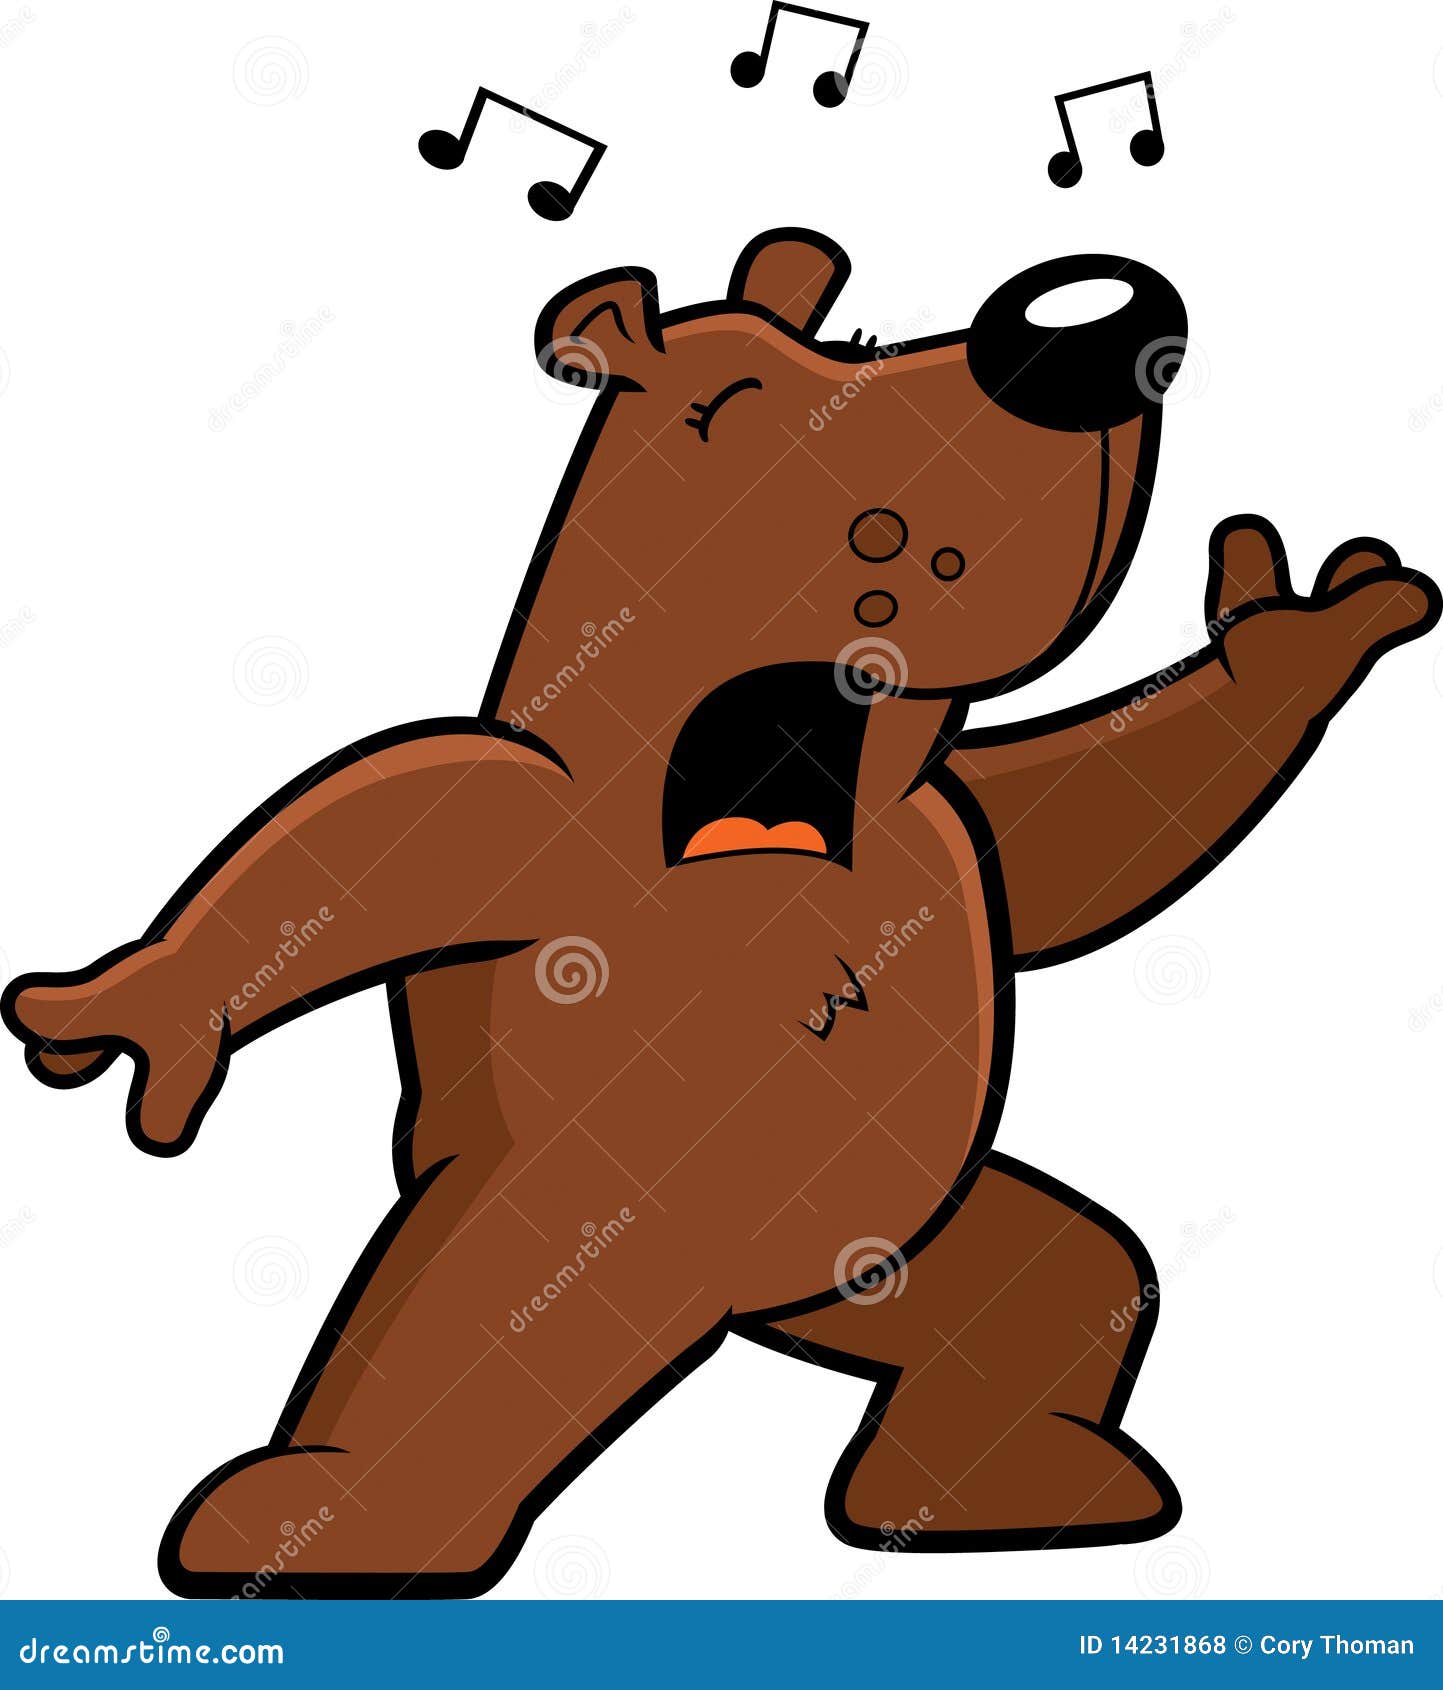 Я пою медведь. Медведь танцует. Медведь поет. Мишка танцует. Медвежонок поет.